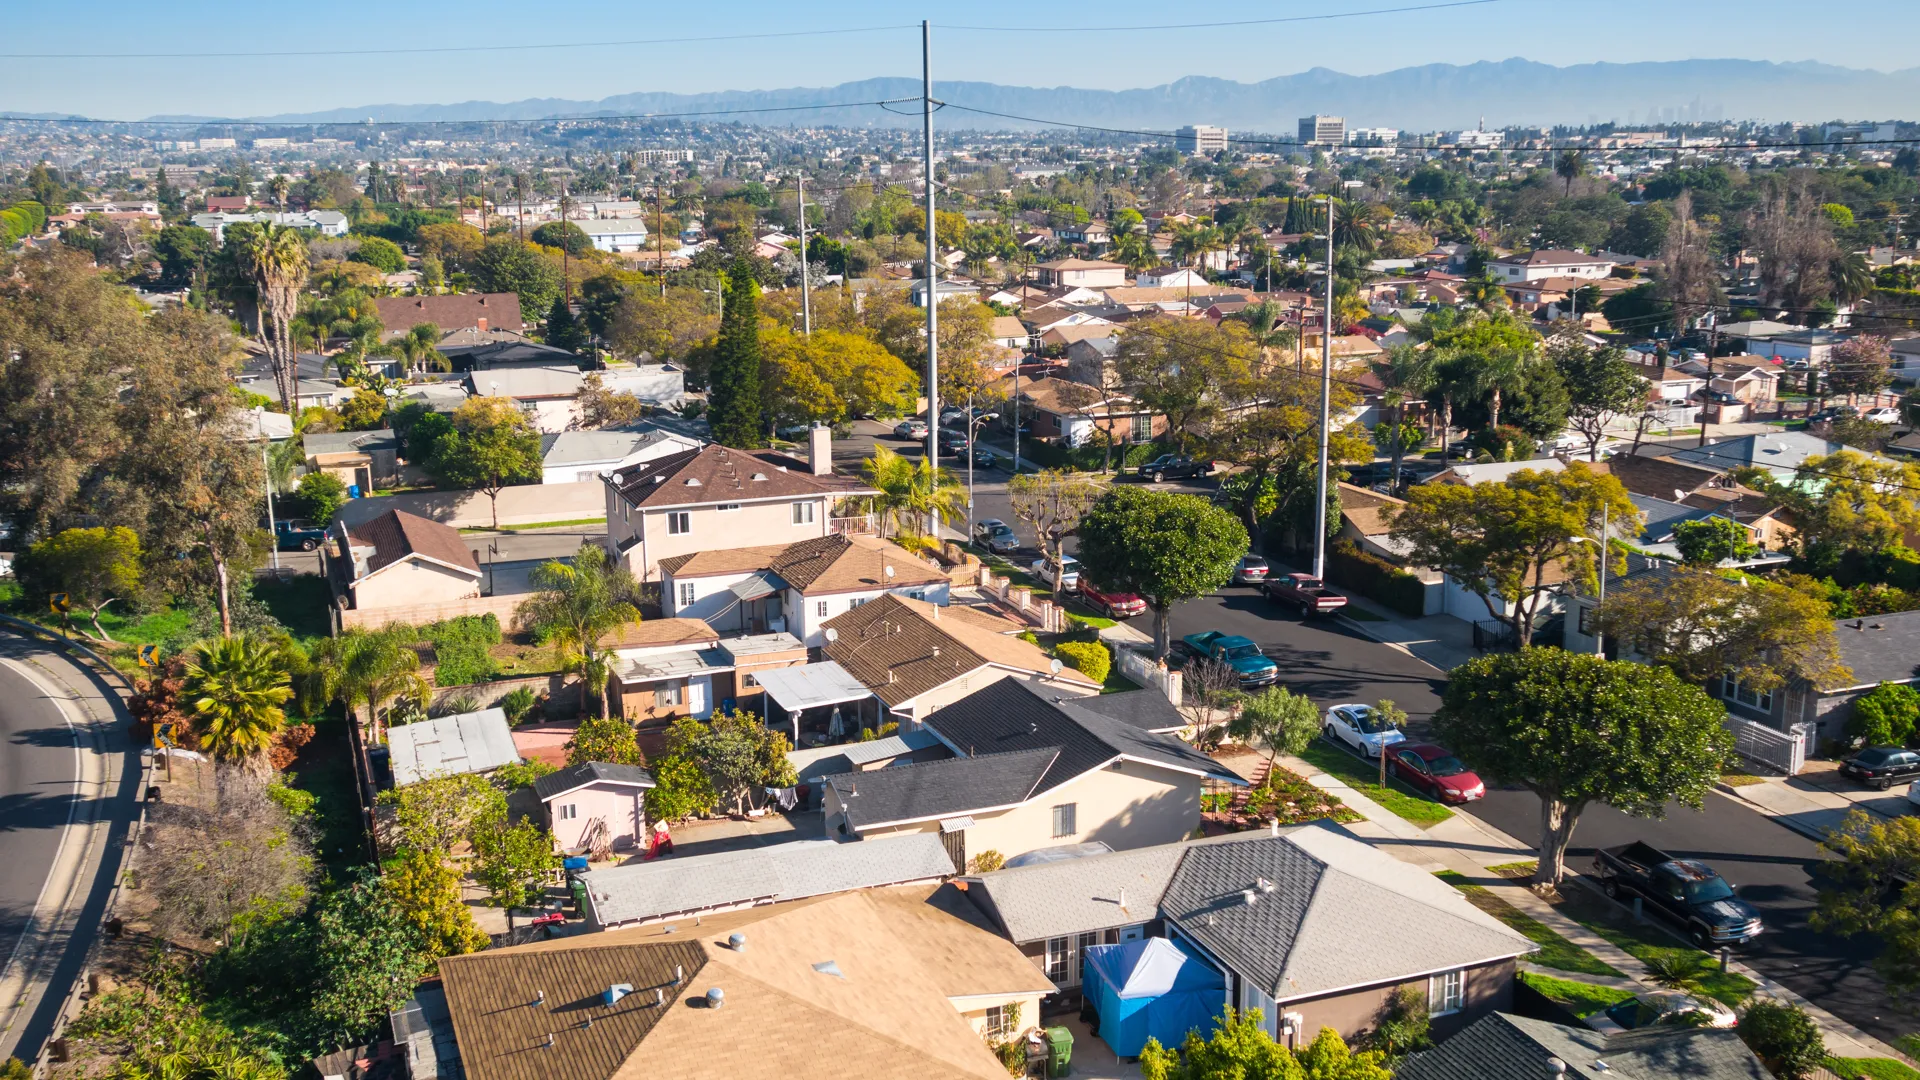 居民区的照片Inglewood地区的房屋和屋顶的洛杉矶,加利福尼亚,美国从上面。